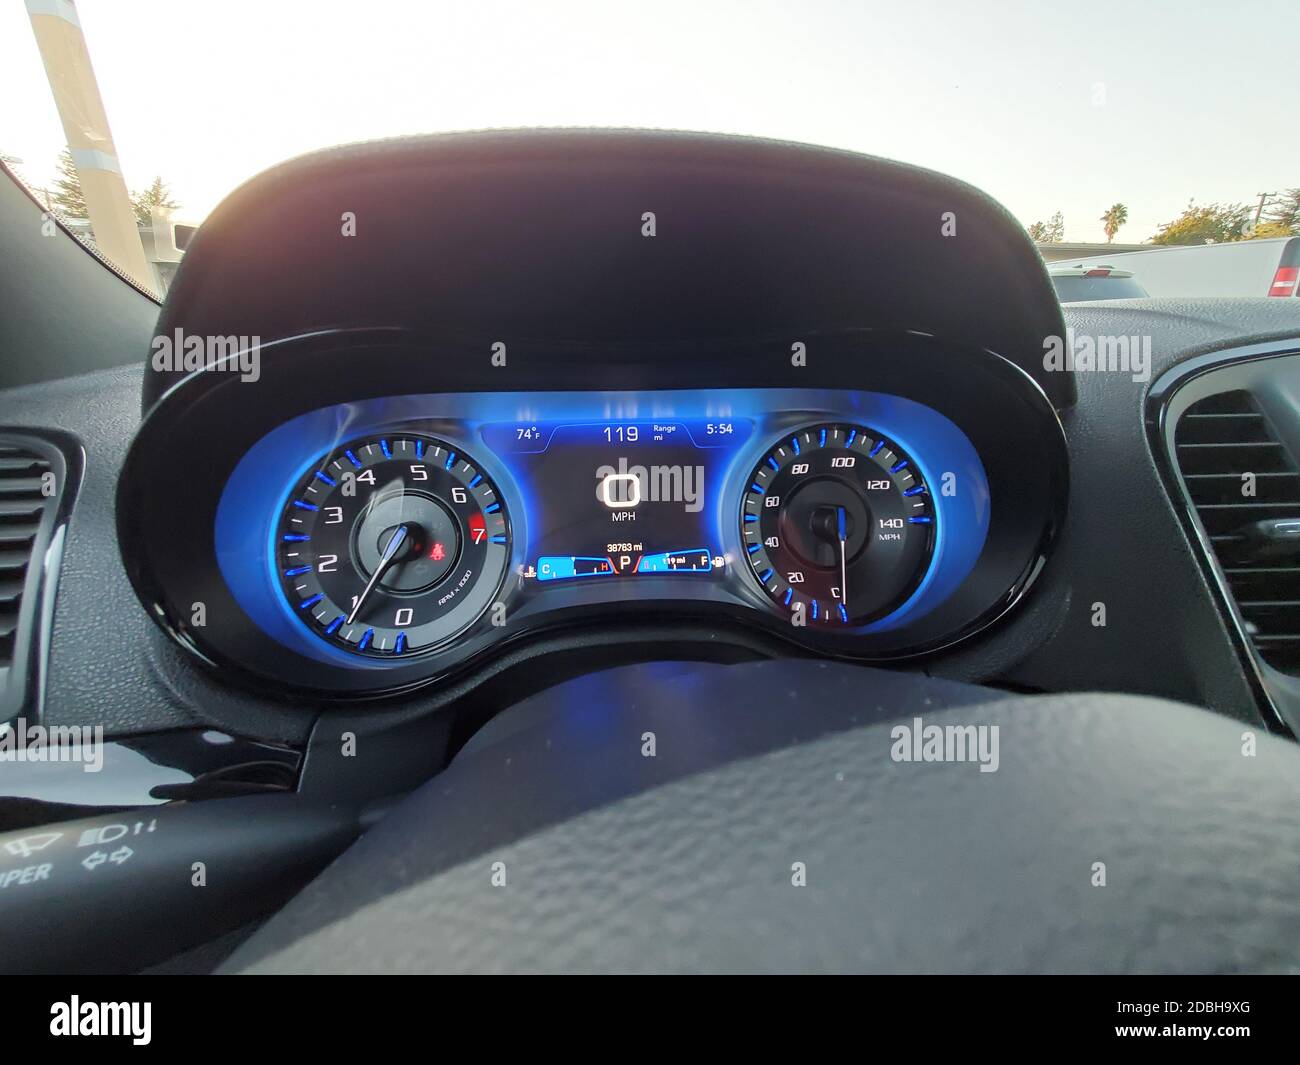 Gros plan d'un tableau de bord numérique de voiture Chrysler, avec affichage numérique, tachymètre et compteur de vitesse à Walnut Creek, Californie, États-Unis, le 23 octobre 2020. () Banque D'Images